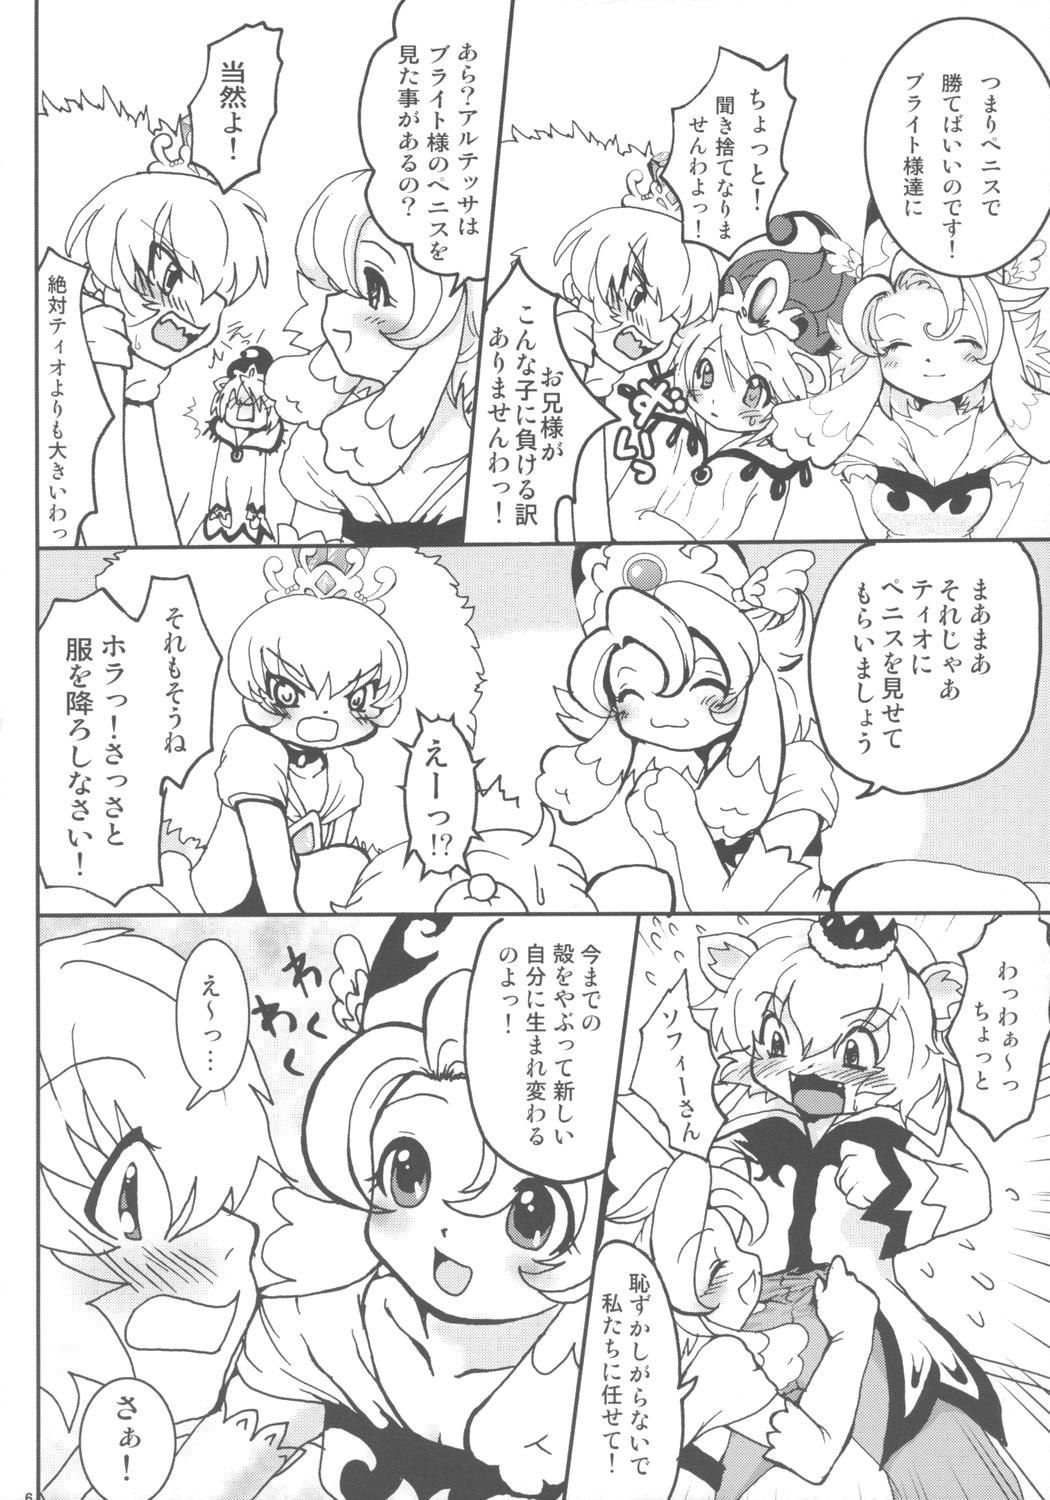 Cartoon Ochakai Shimasho - Fushigiboshi no futagohime Step Mom - Page 5